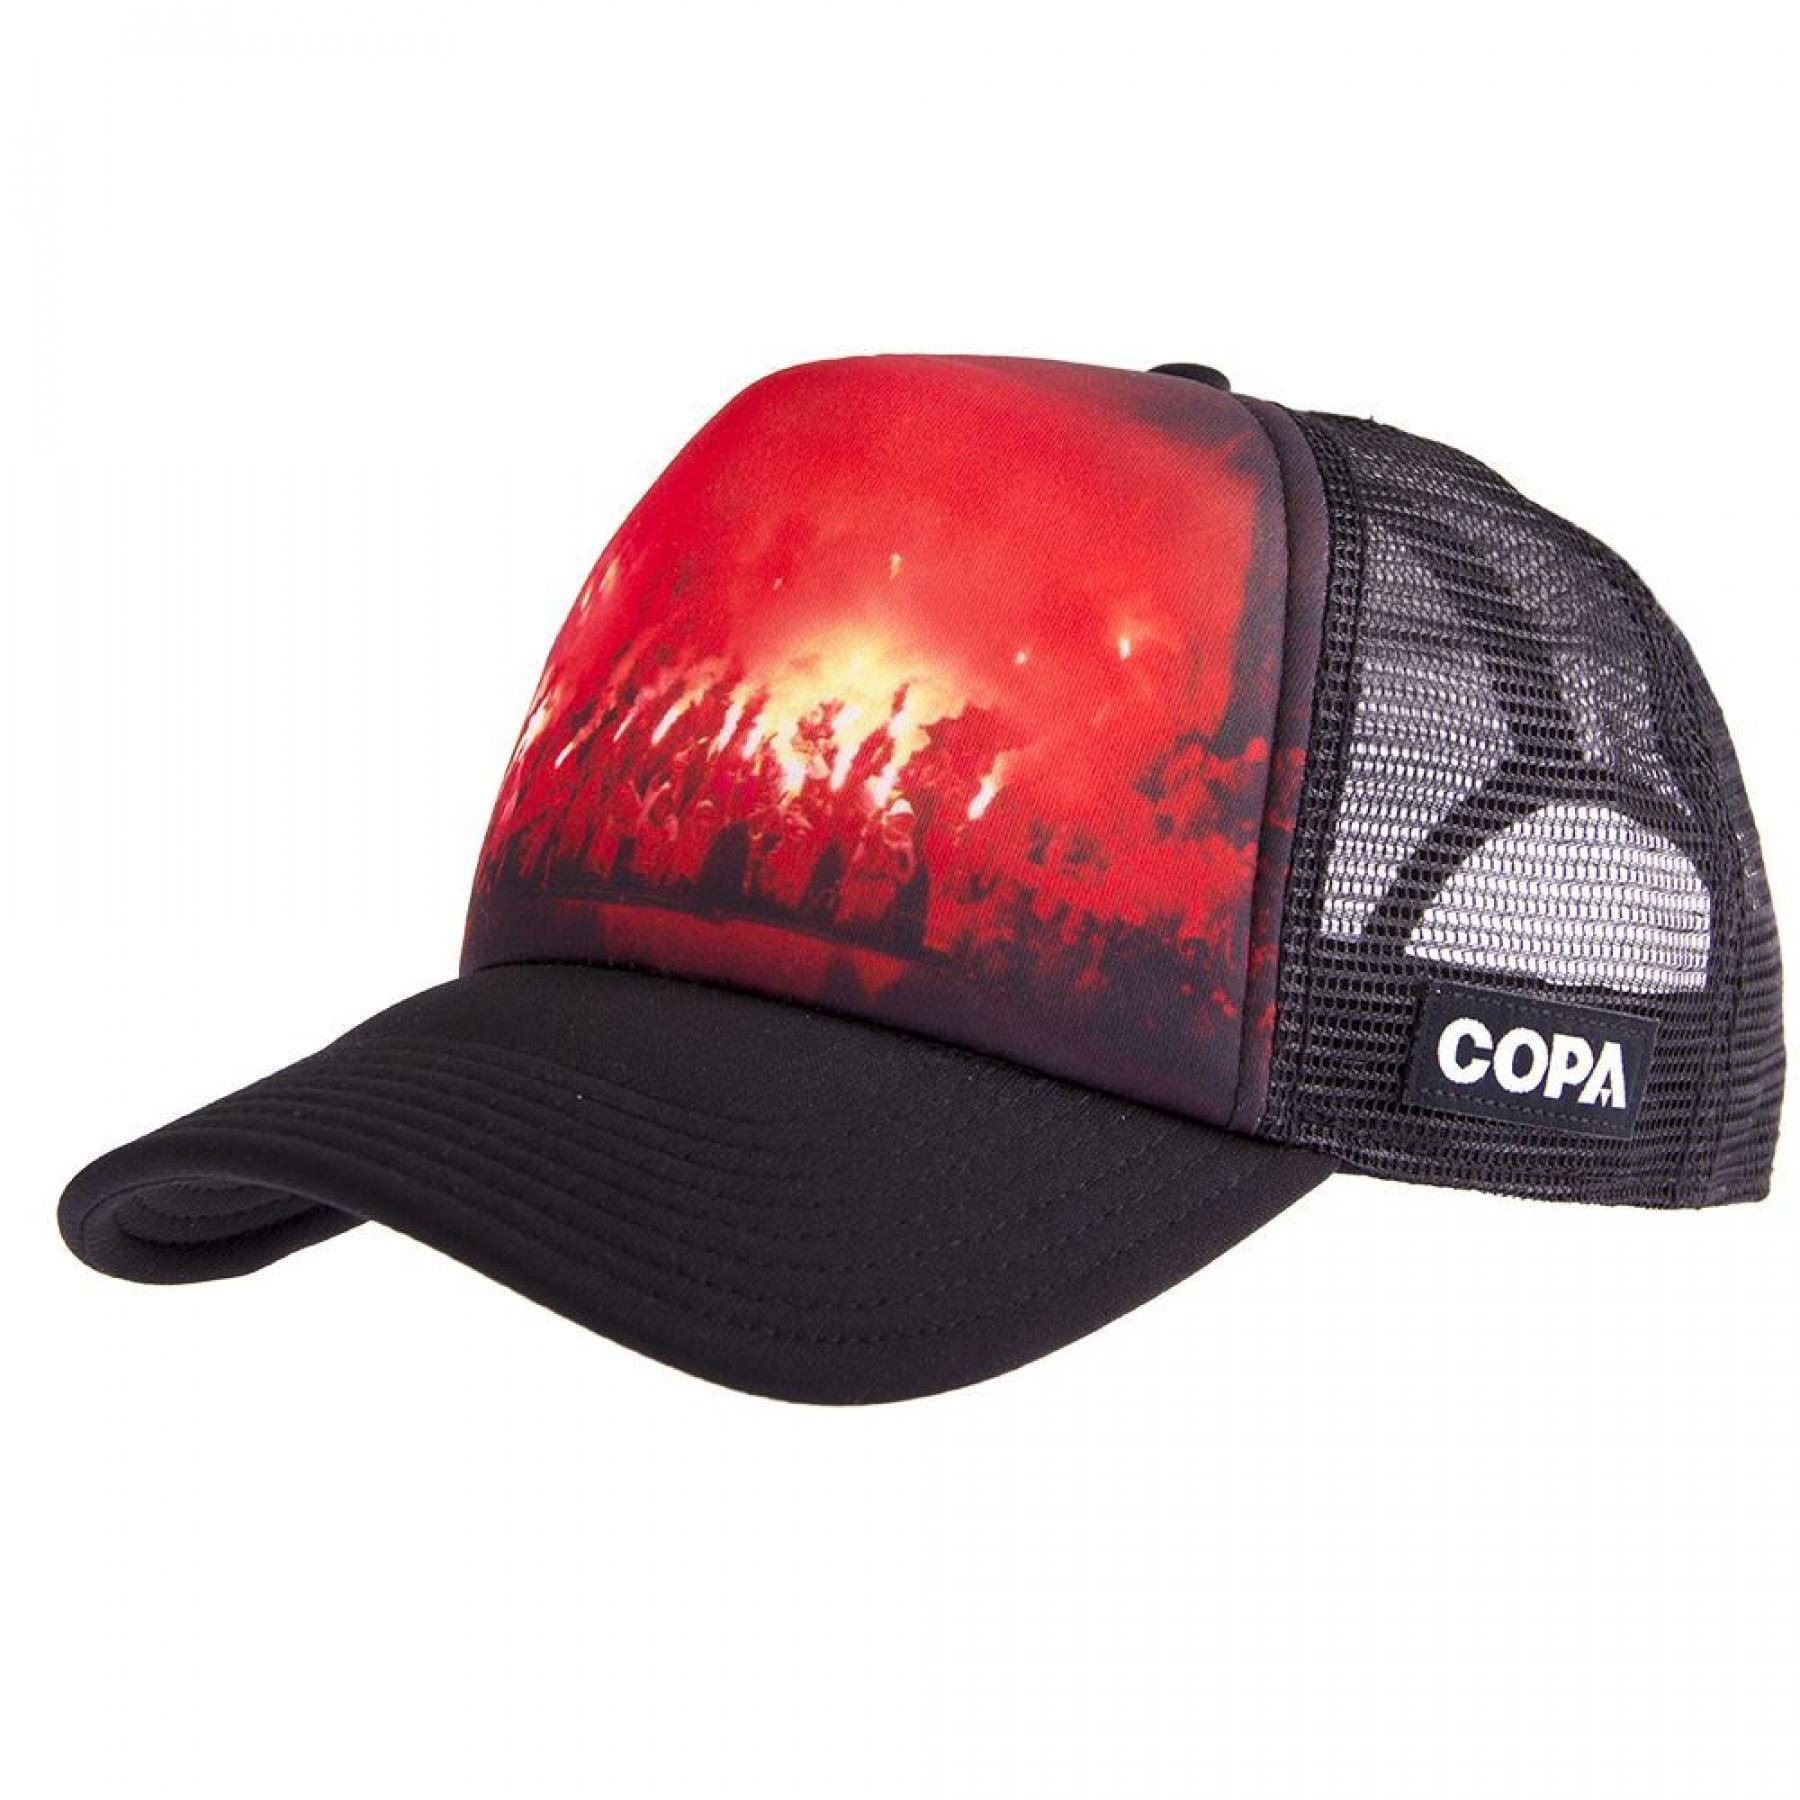 Copa Pyro Trucker Hats